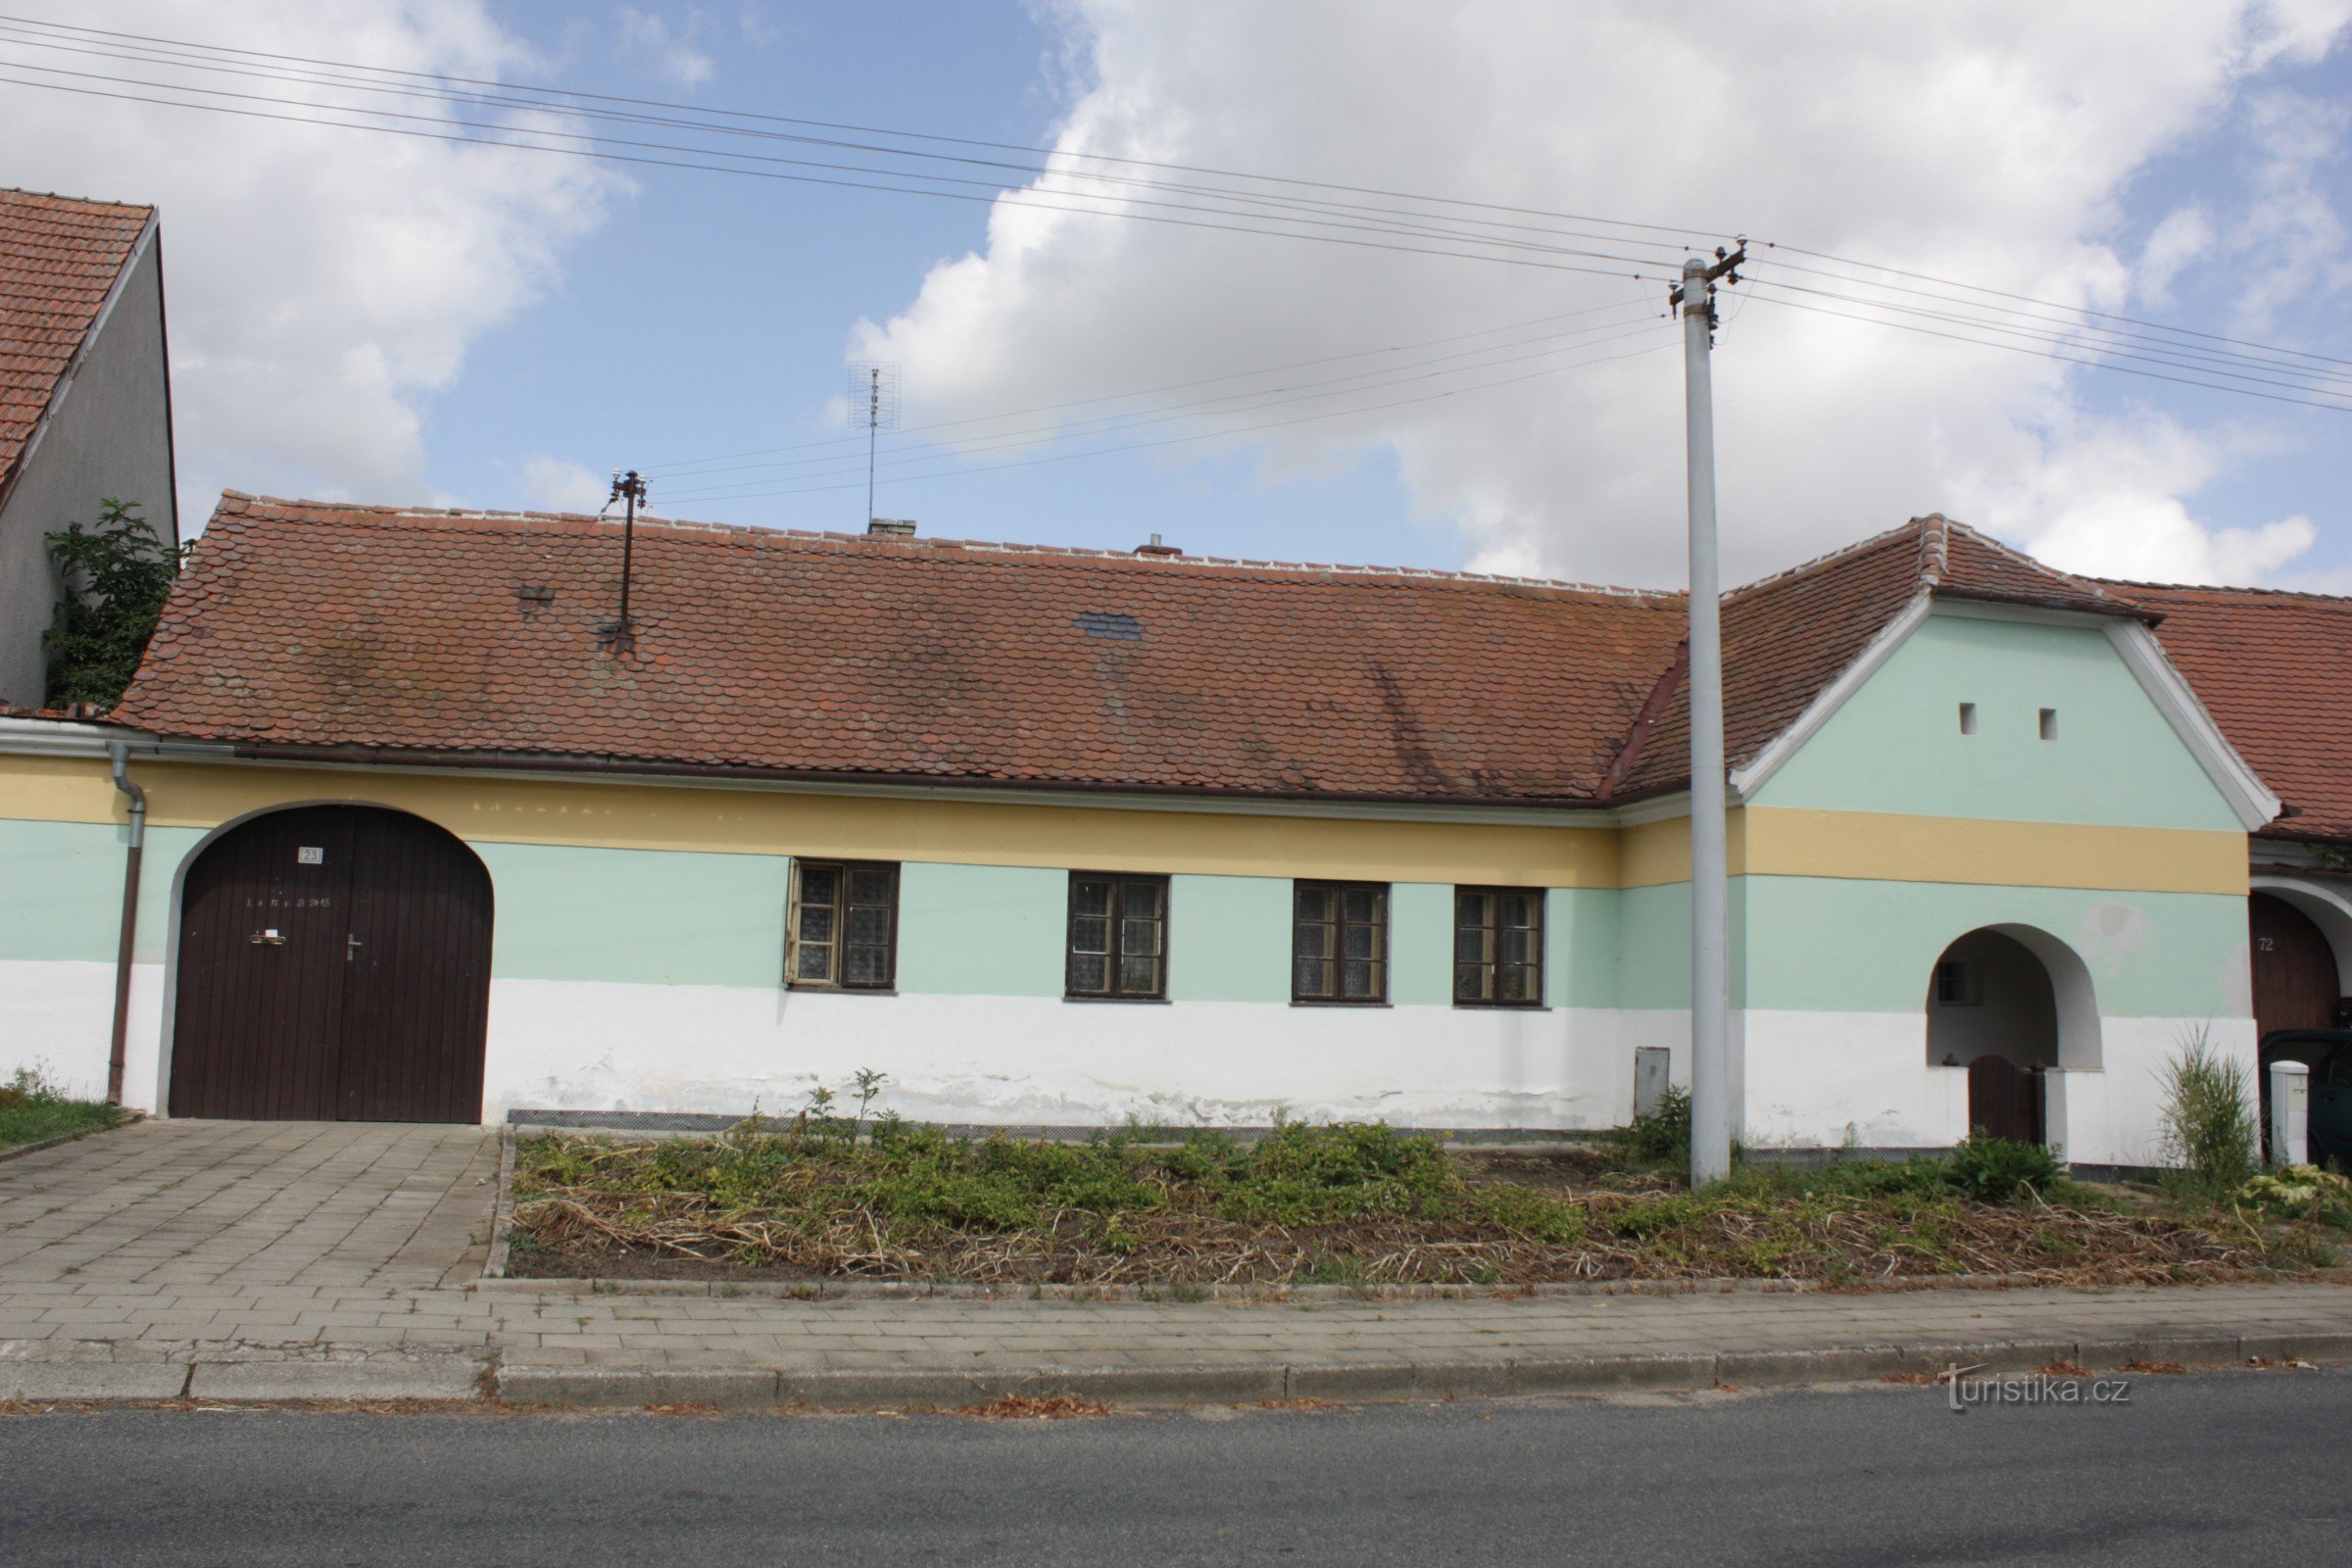 Ngôi nhà sỏi số 23 ở Lysovice